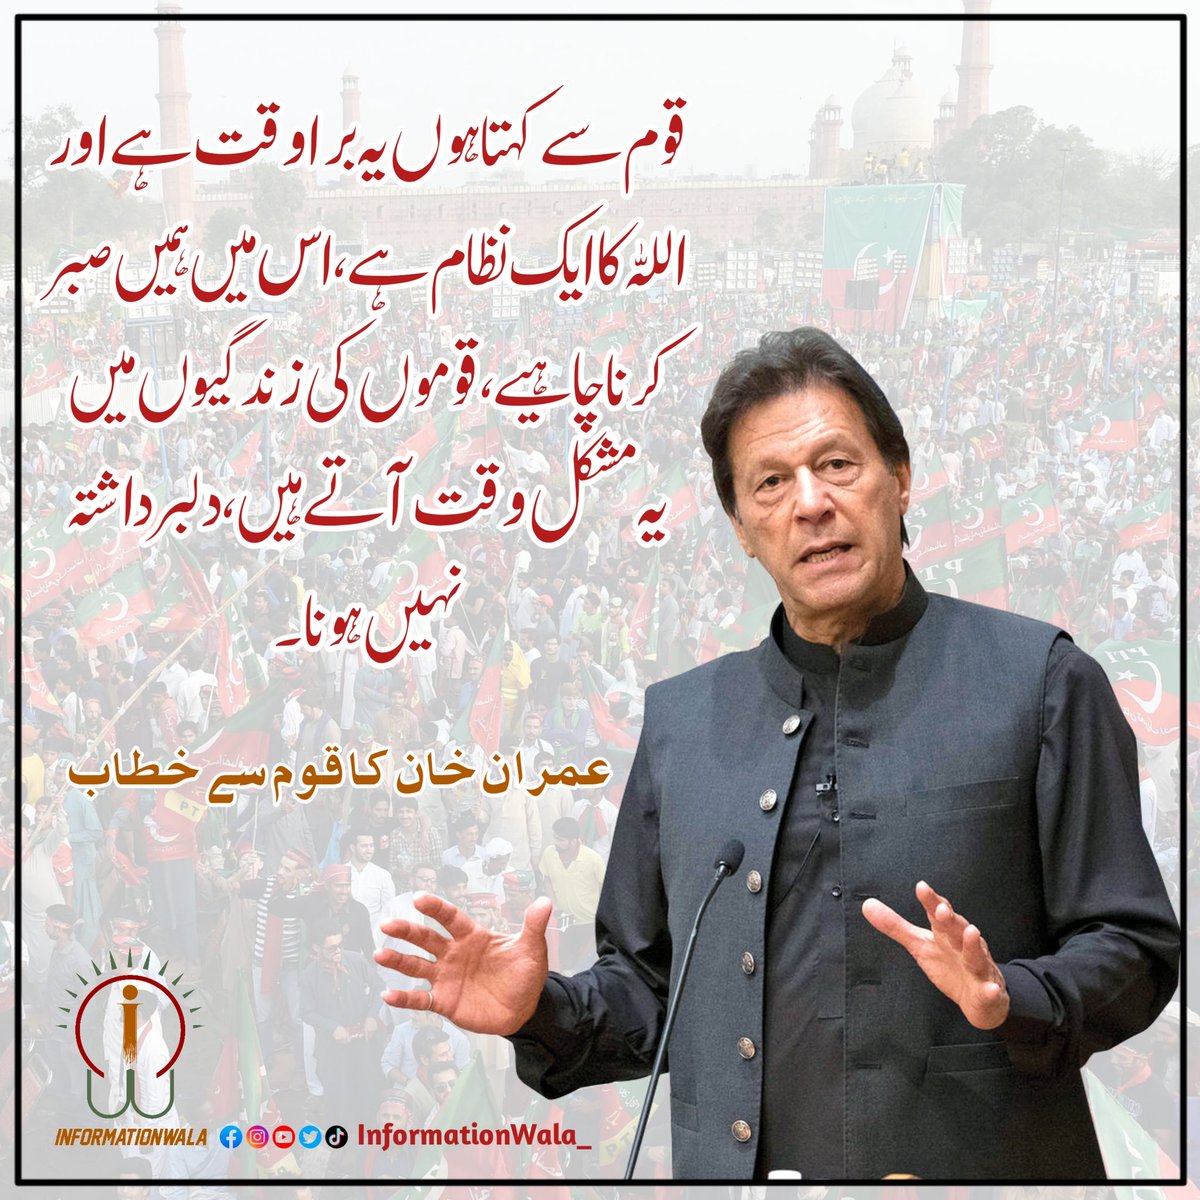 قوم سے کہتا ہوں یہ بُرا وقت ہے اور اللہ کا ایک نظام ہے، اس میں ہمیں صبر کرنا چاہیے، قوموں کی زندگیوں میں یہ مشکل وقت آتے ہیں، دلبرداشتہ نہیں ہونا۔ عمران خان کا قوم سے خطاب @ImranKhanPTI